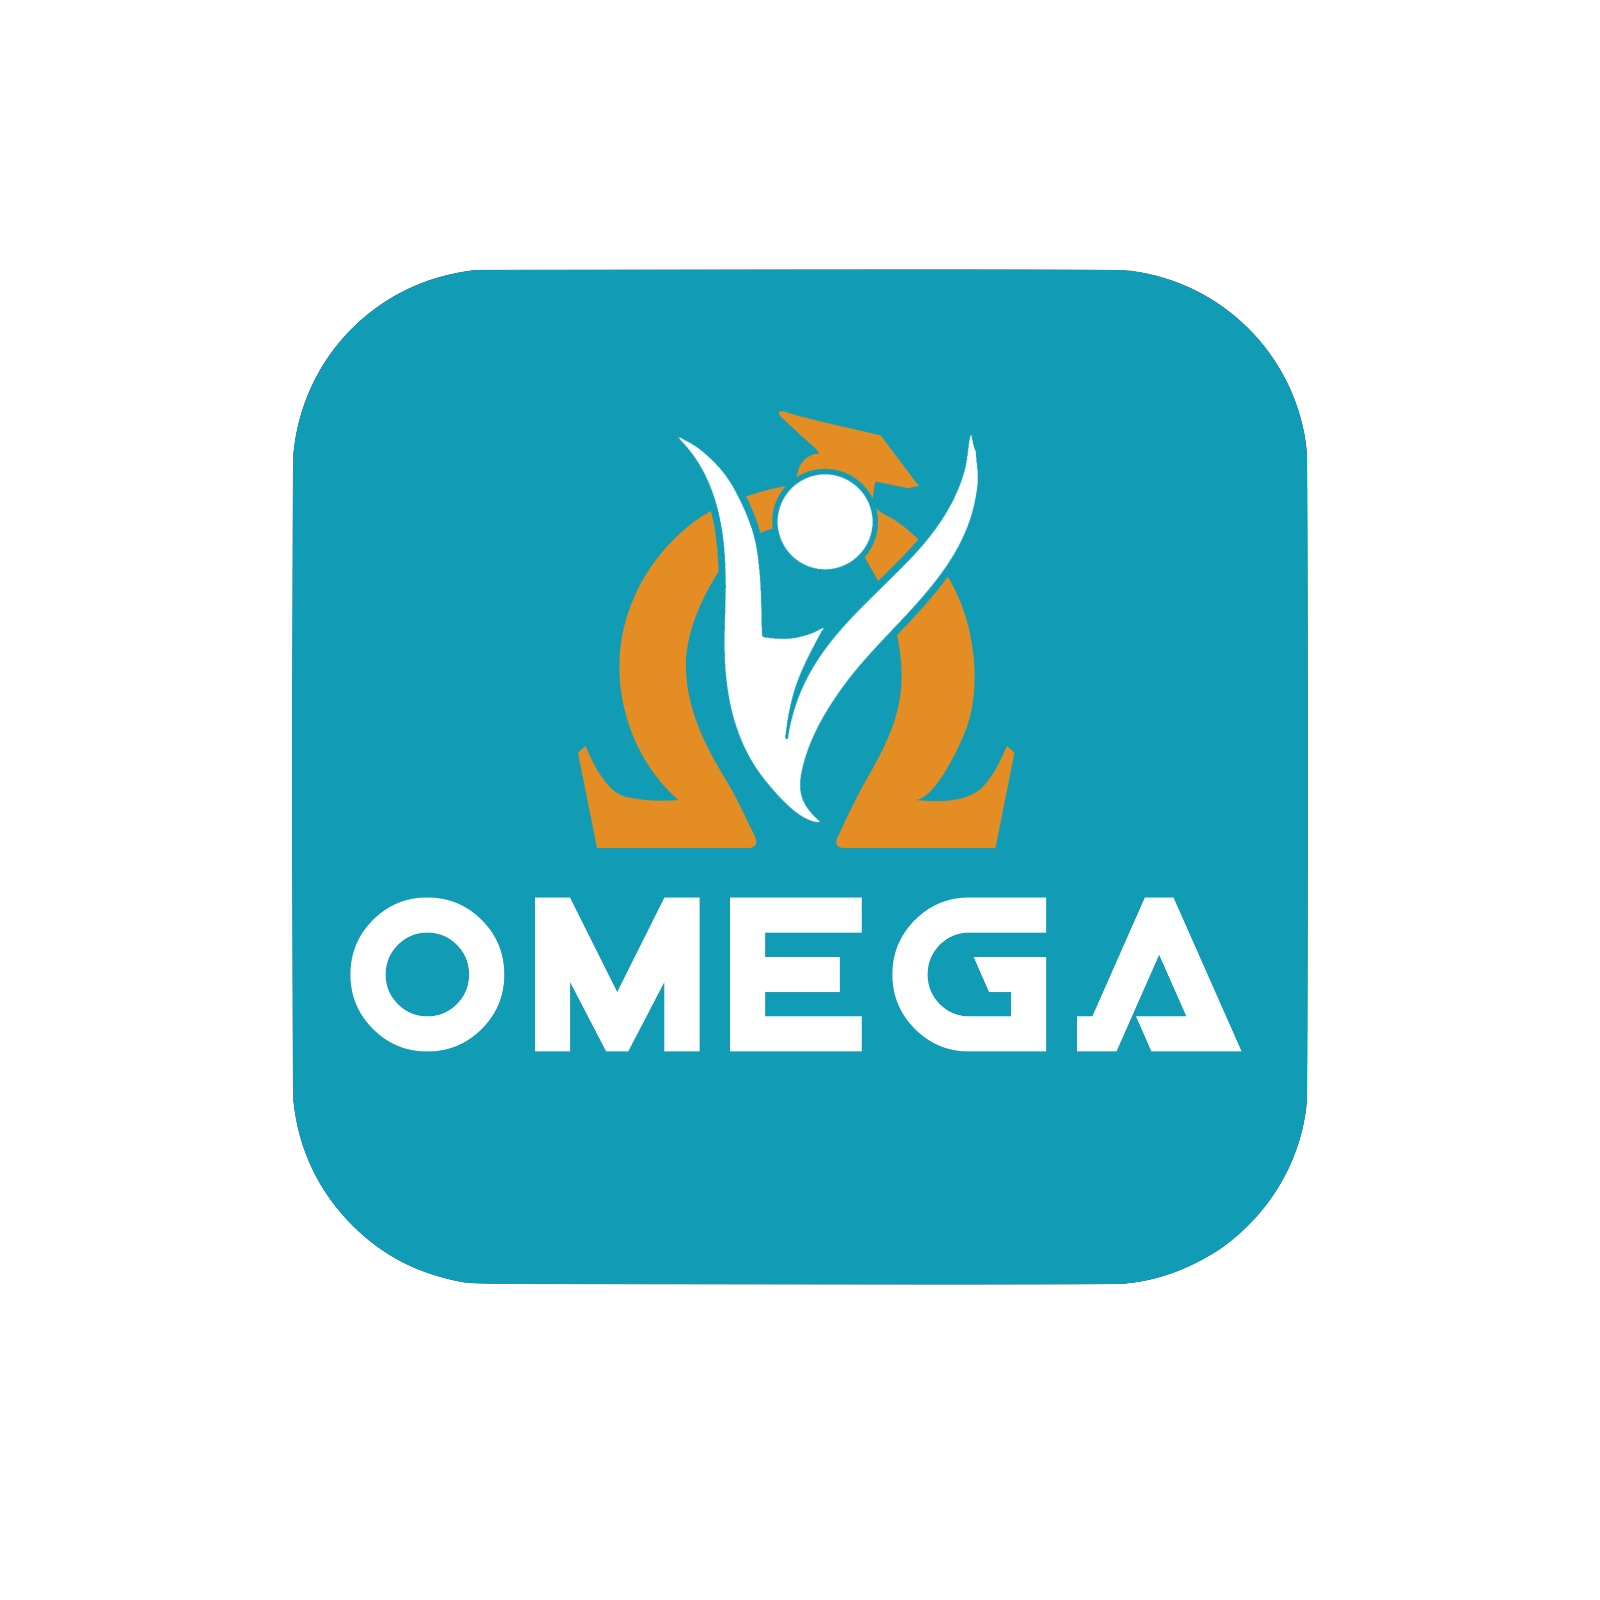 أوميجا – omega